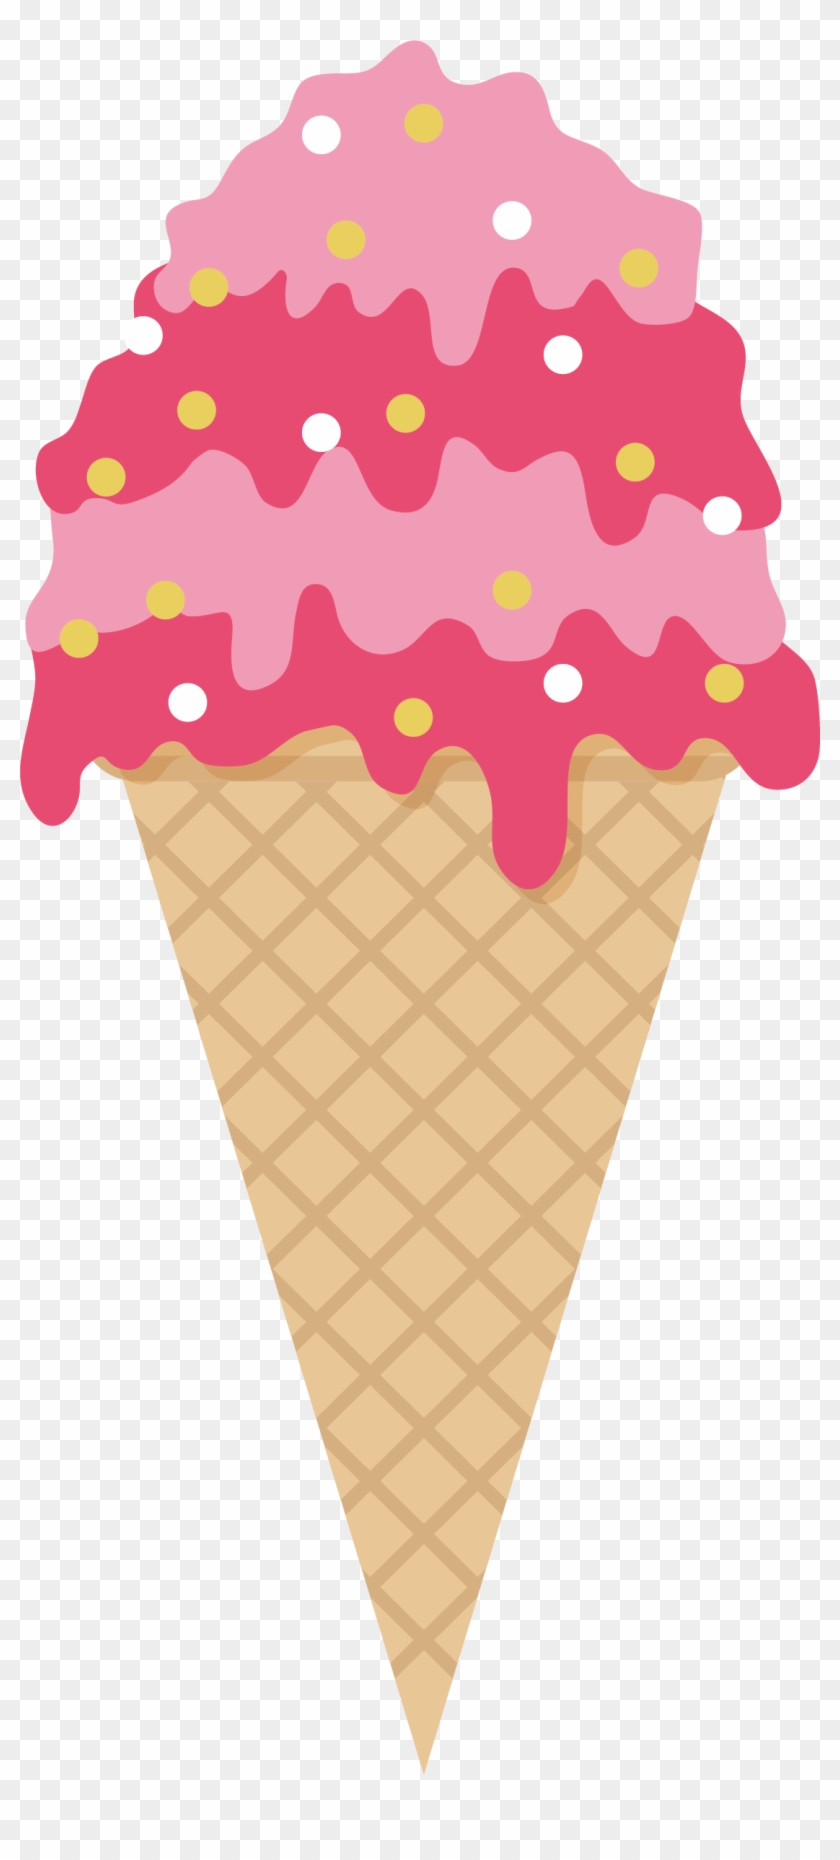 Ice Cream Cone Strawberry Ice Cream Sundae - Ice Cream #547650